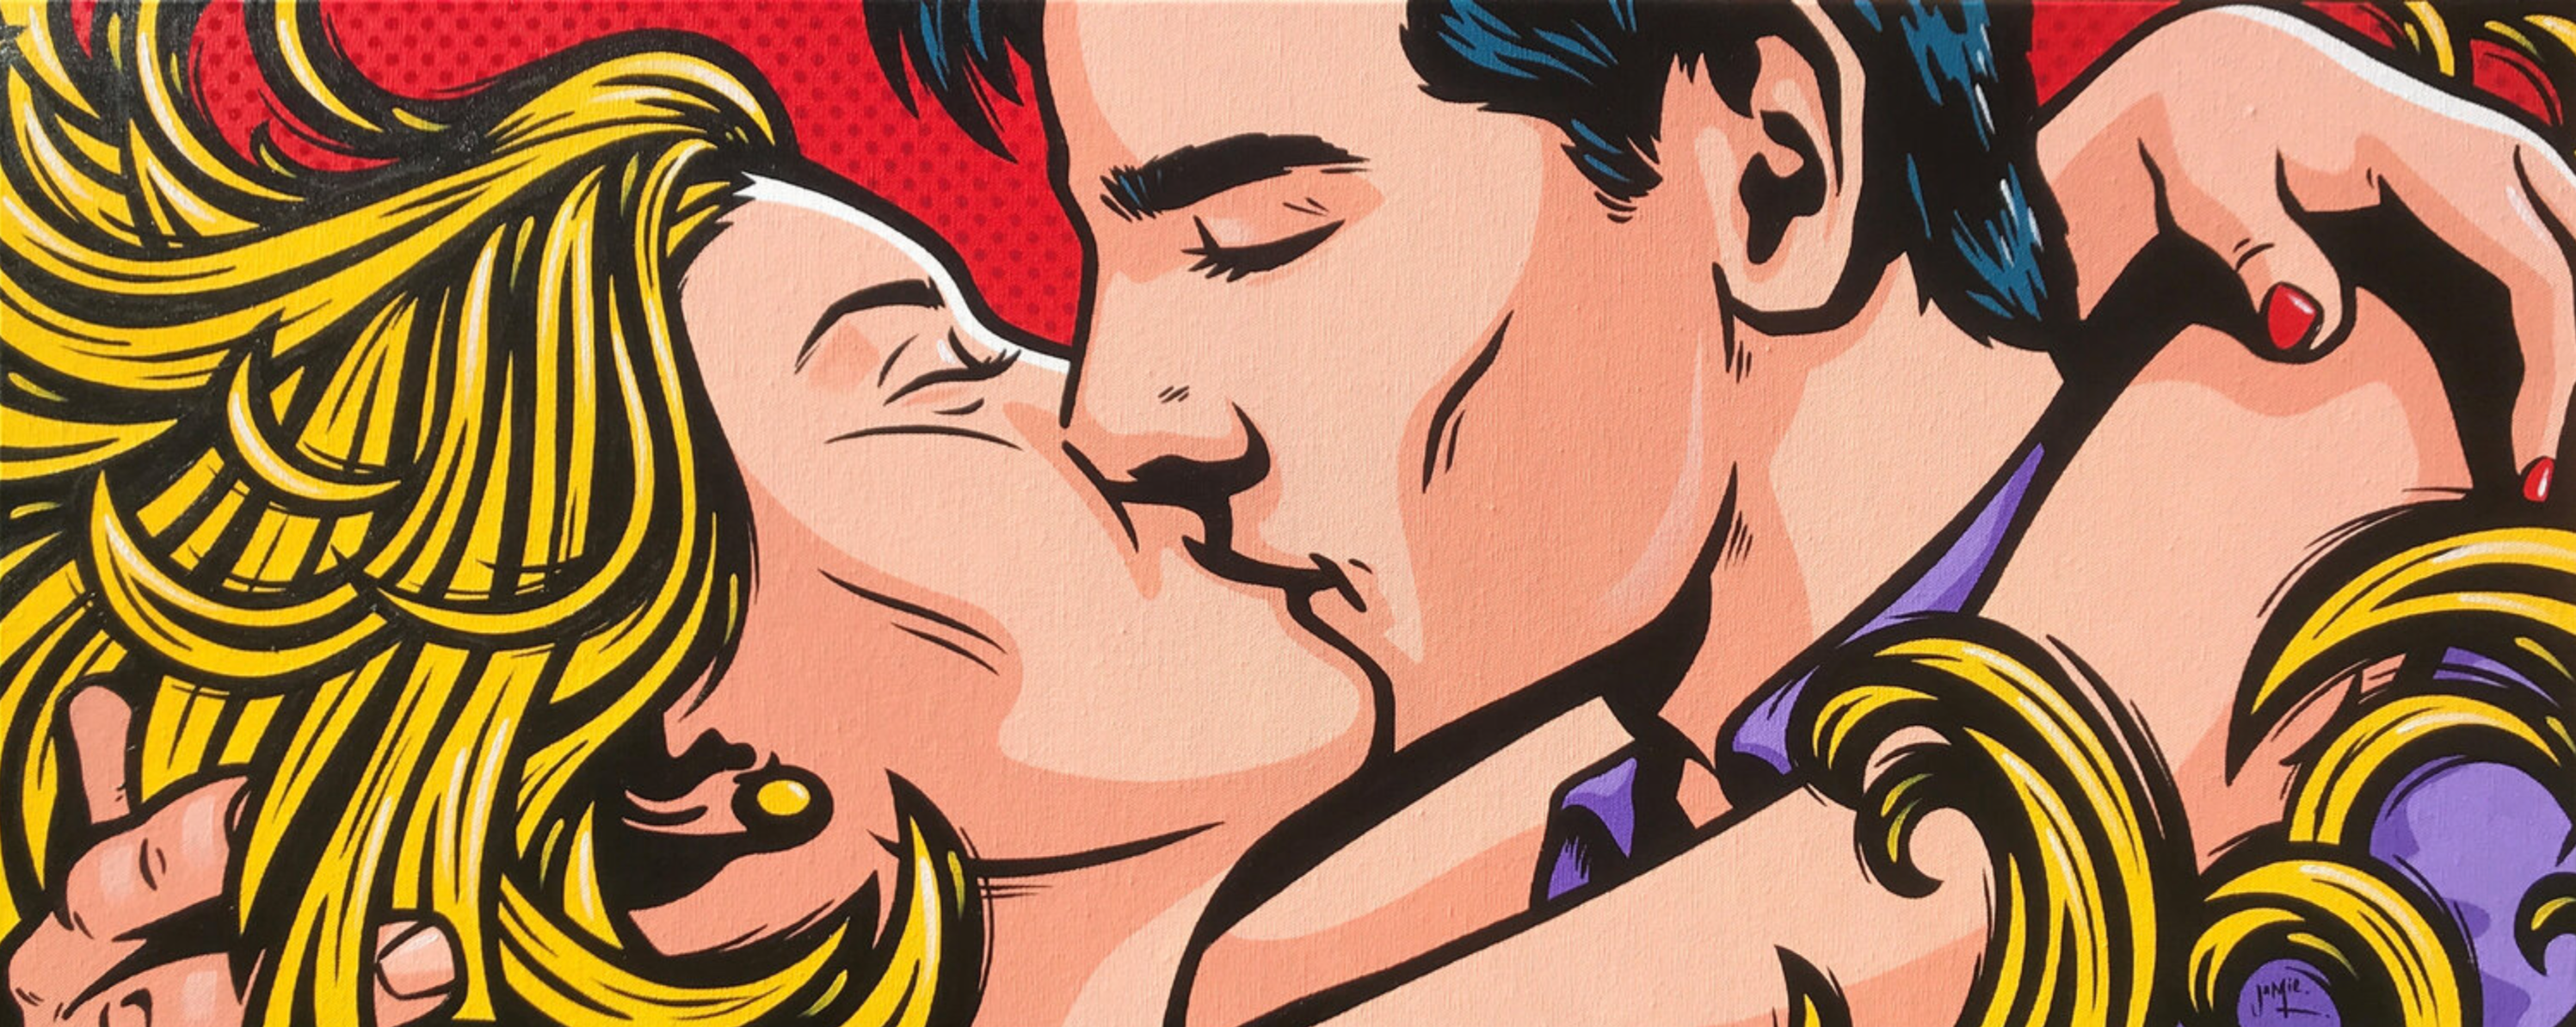 Quadro pop art di Jamie Lee "Jung Love" in stile fumetto con disegno originale di una giovane coppia che si abbraccia e si bacia appassionatamente. I capelli biondi della donna la avvolgono come fiamme di passione.